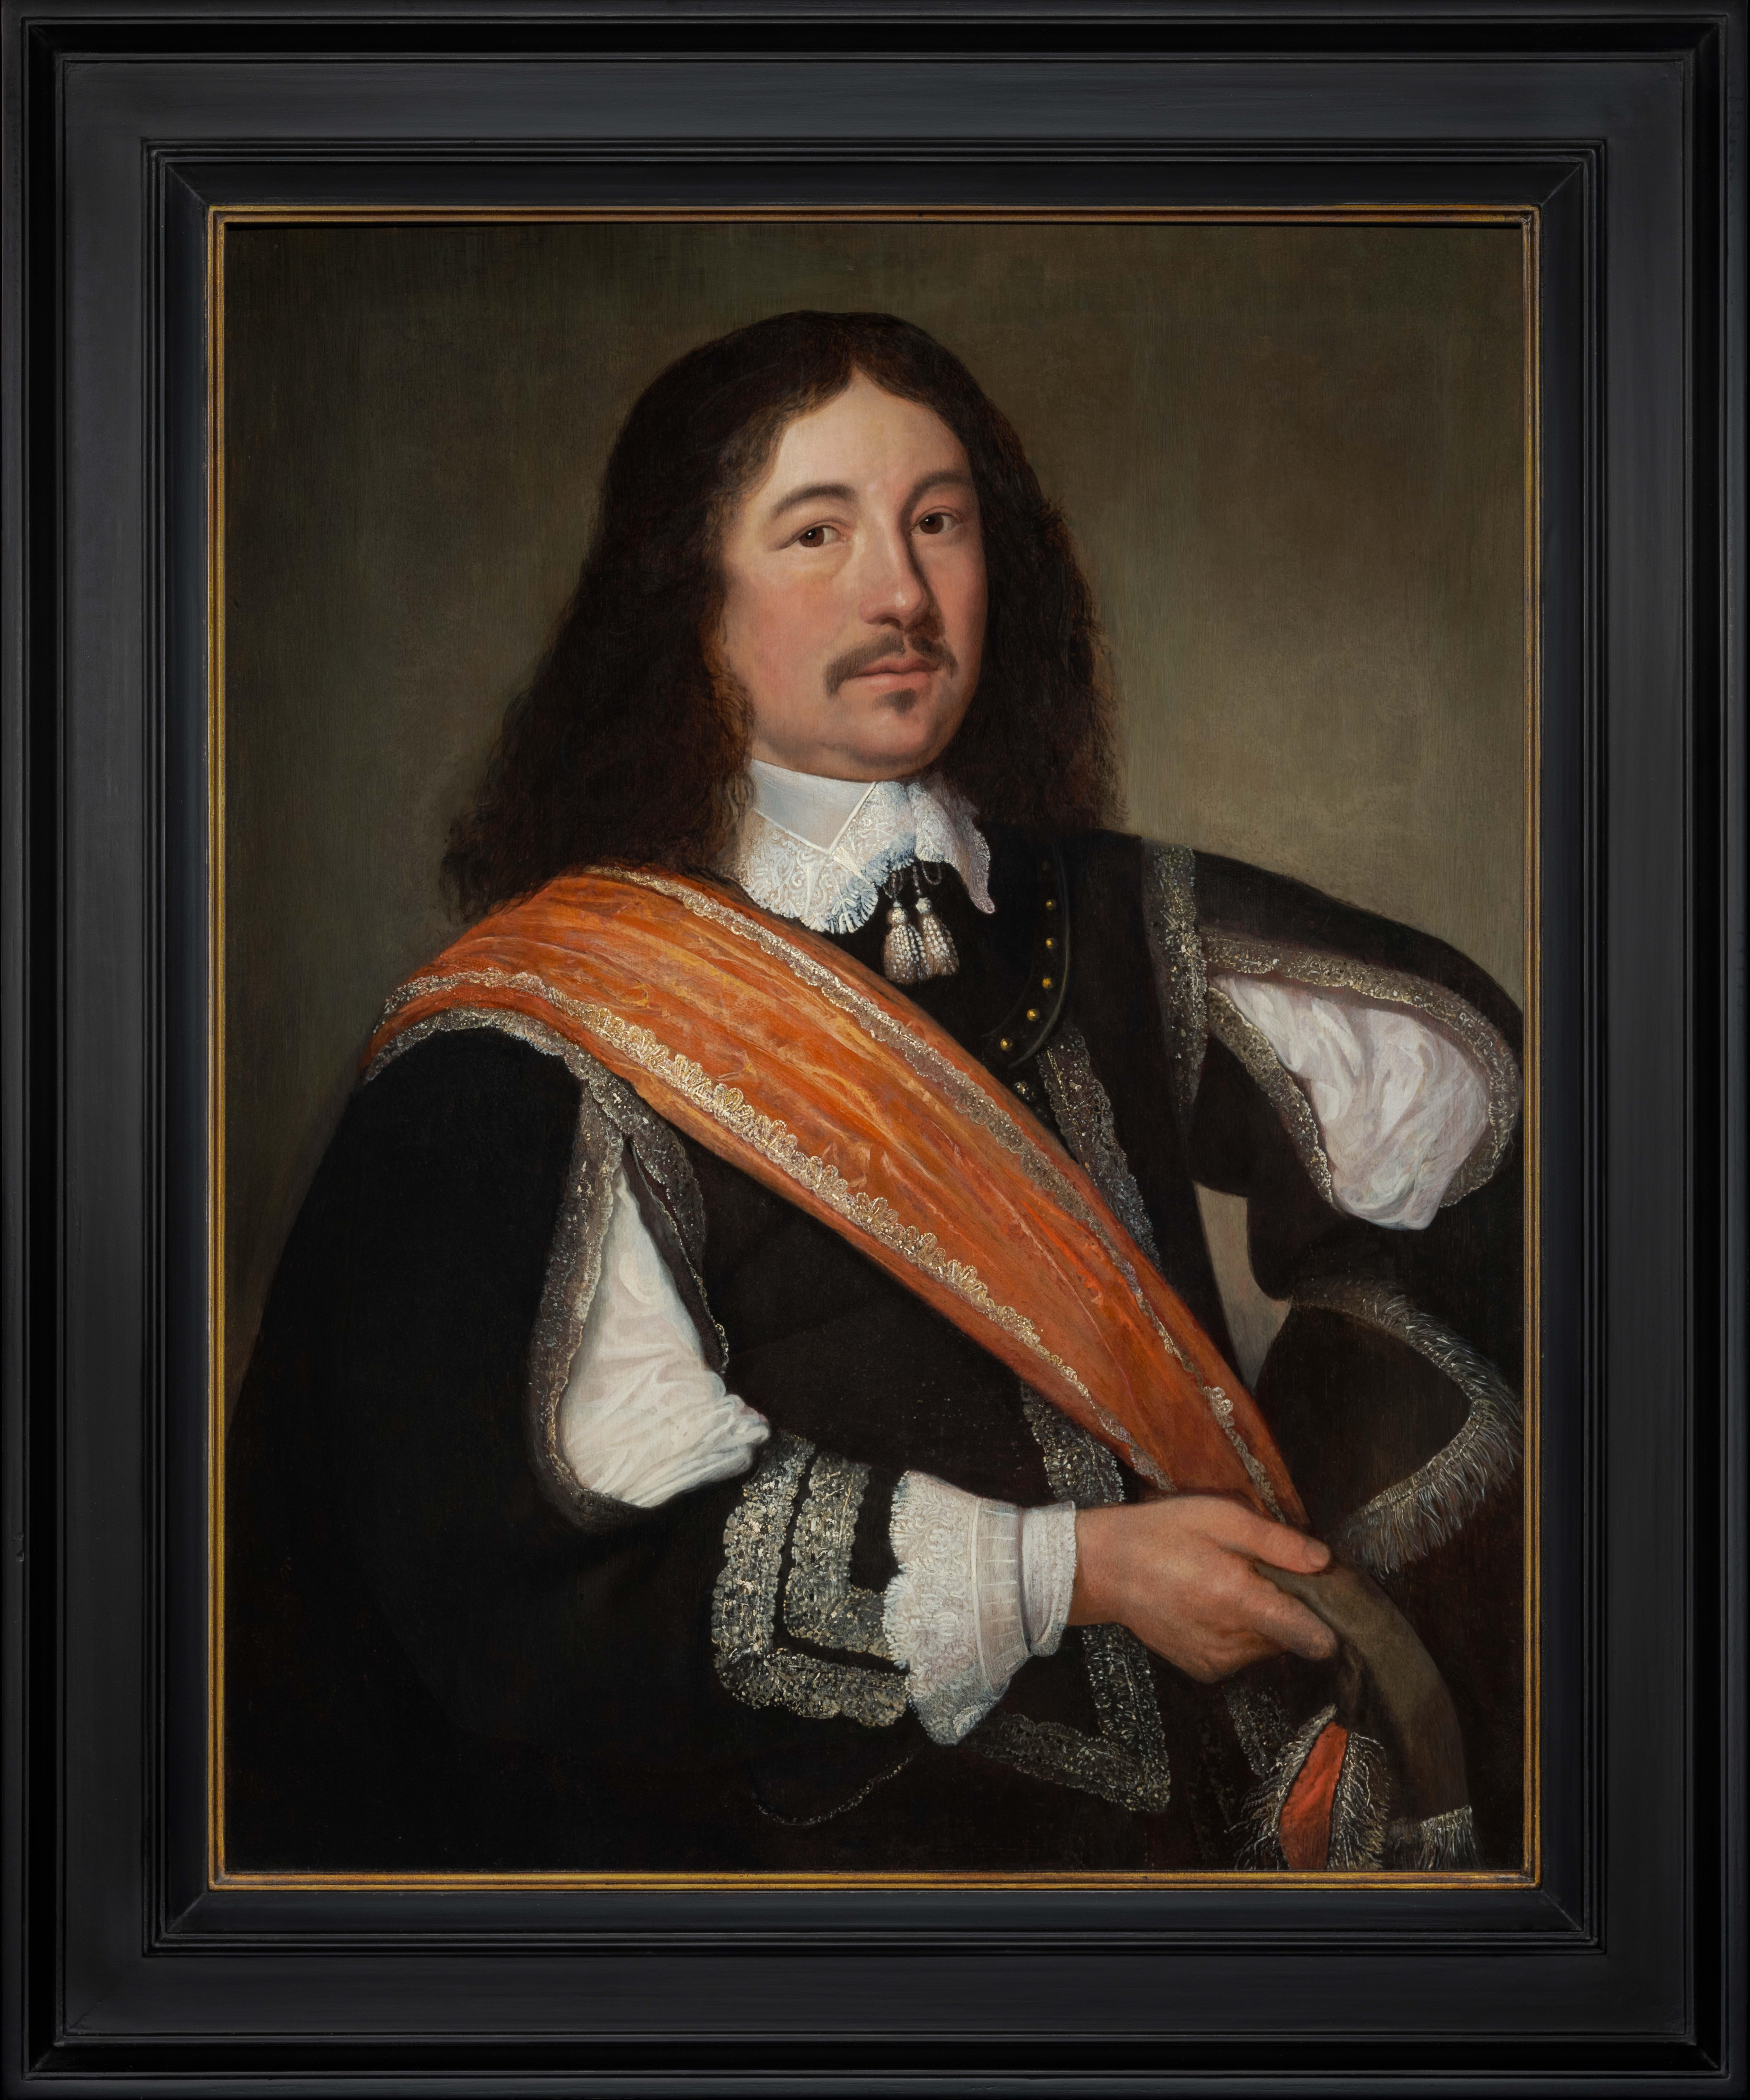 Portrait Gentleman Schwarzer Mantel Orangene Schärpe, Niederländischer Alter Meister, Öl auf Leinwand um 1650 – Art von Bartholomeus van der Helst